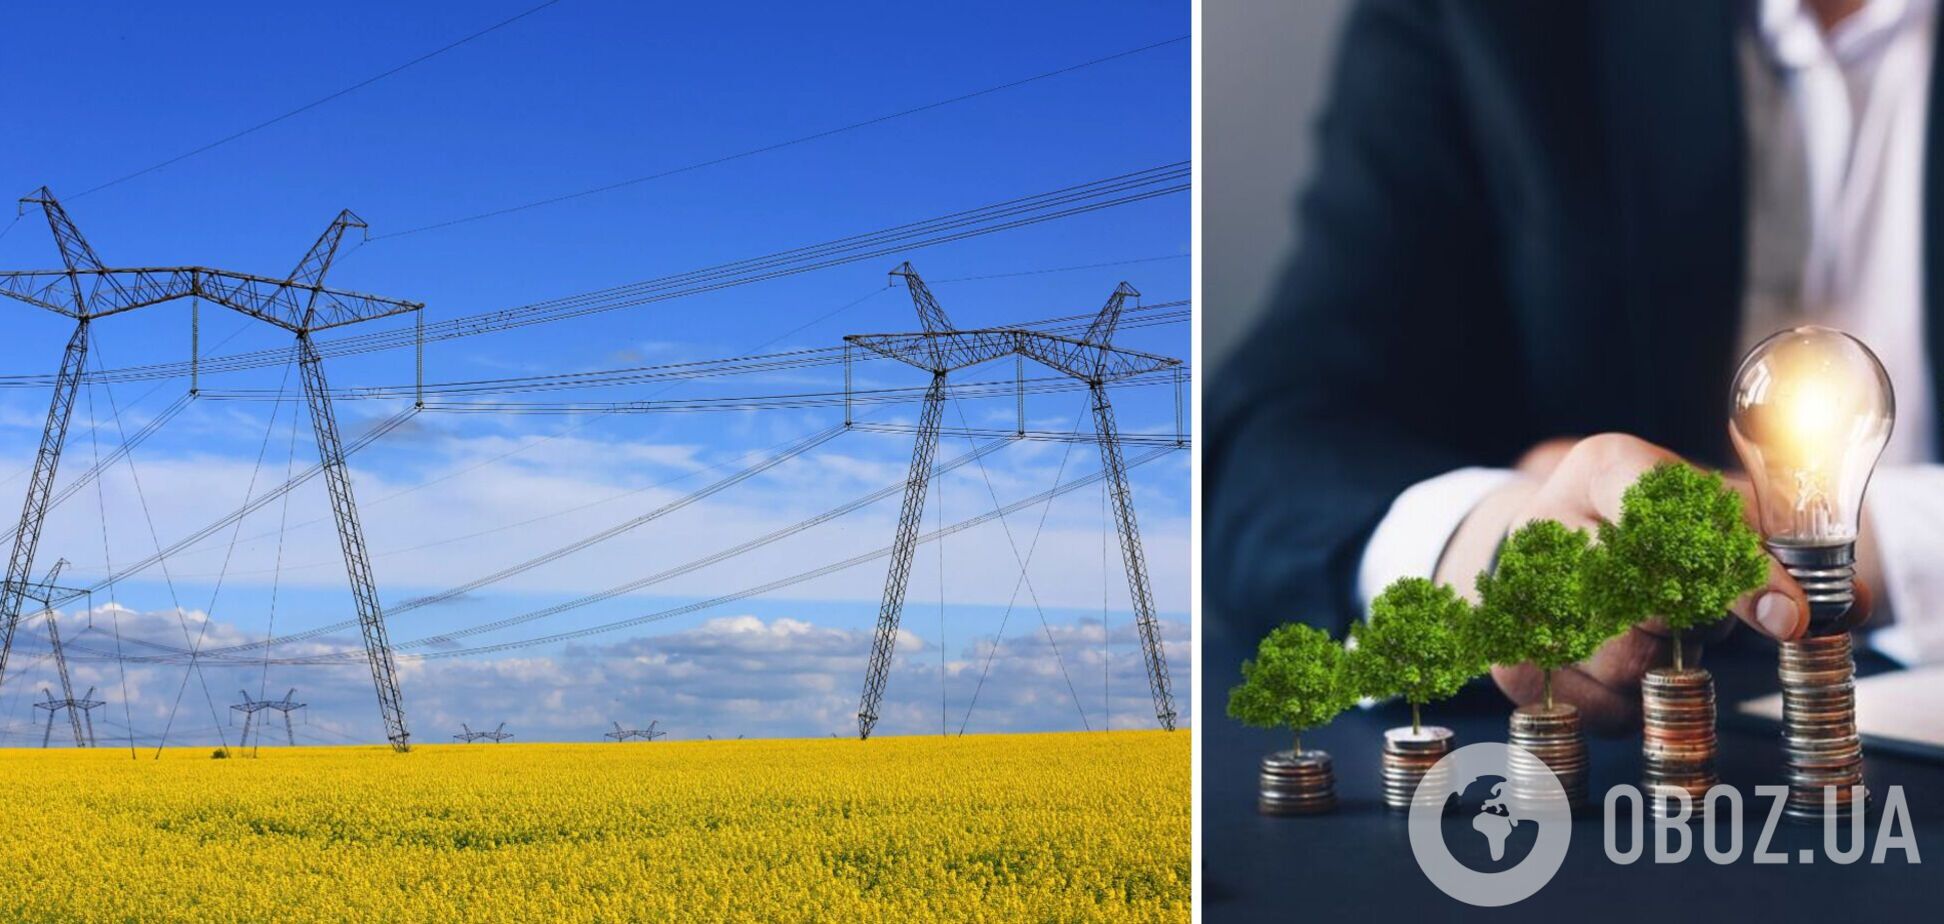 Развитие зеленой энергетики в Украине сдерживает проблема долгов, – Голиздра